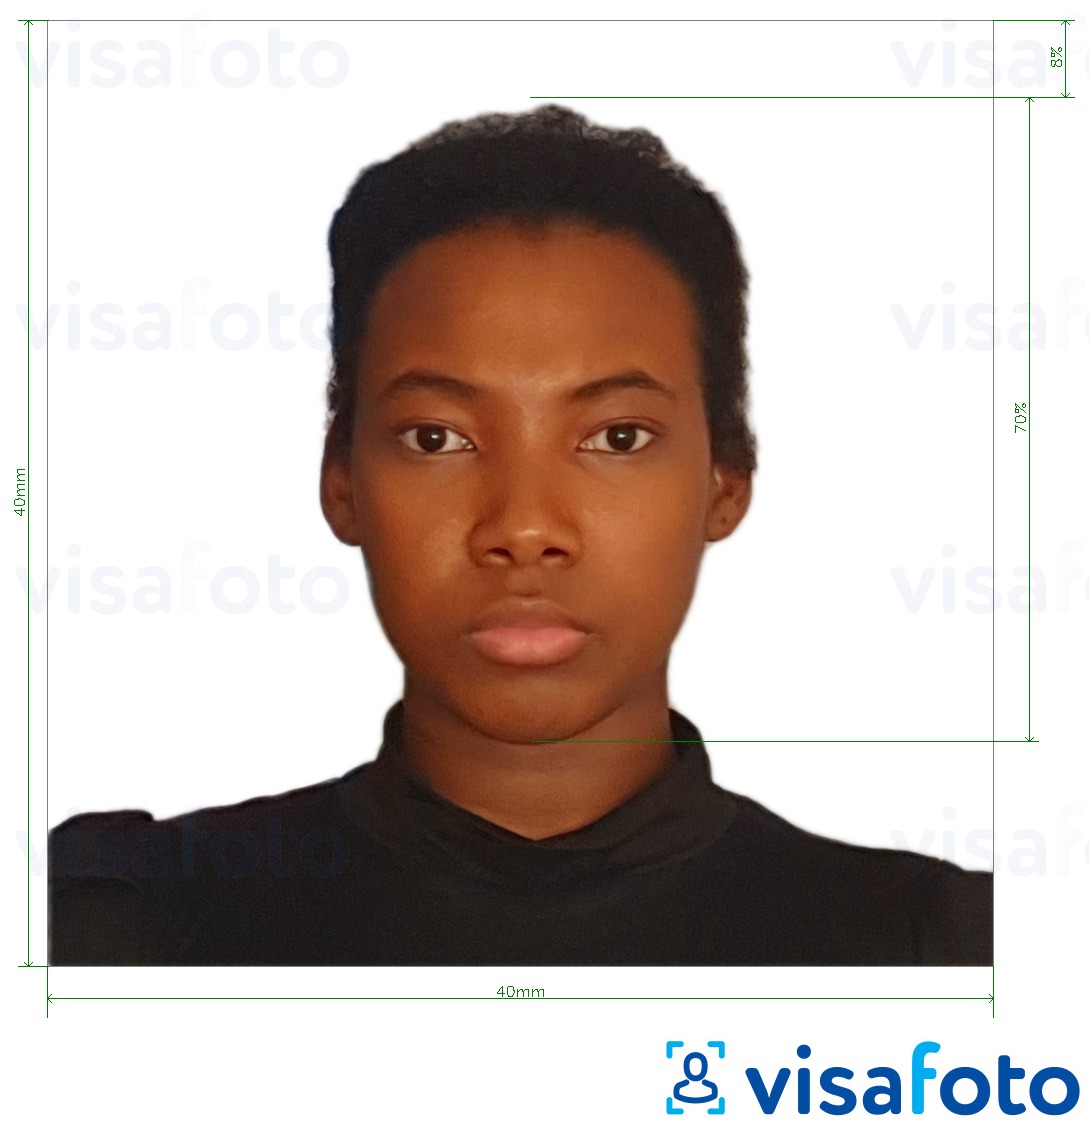 Voorbeeld van foto voor Madagascar paspoort 40x40 mm met exacte maatspecificatie